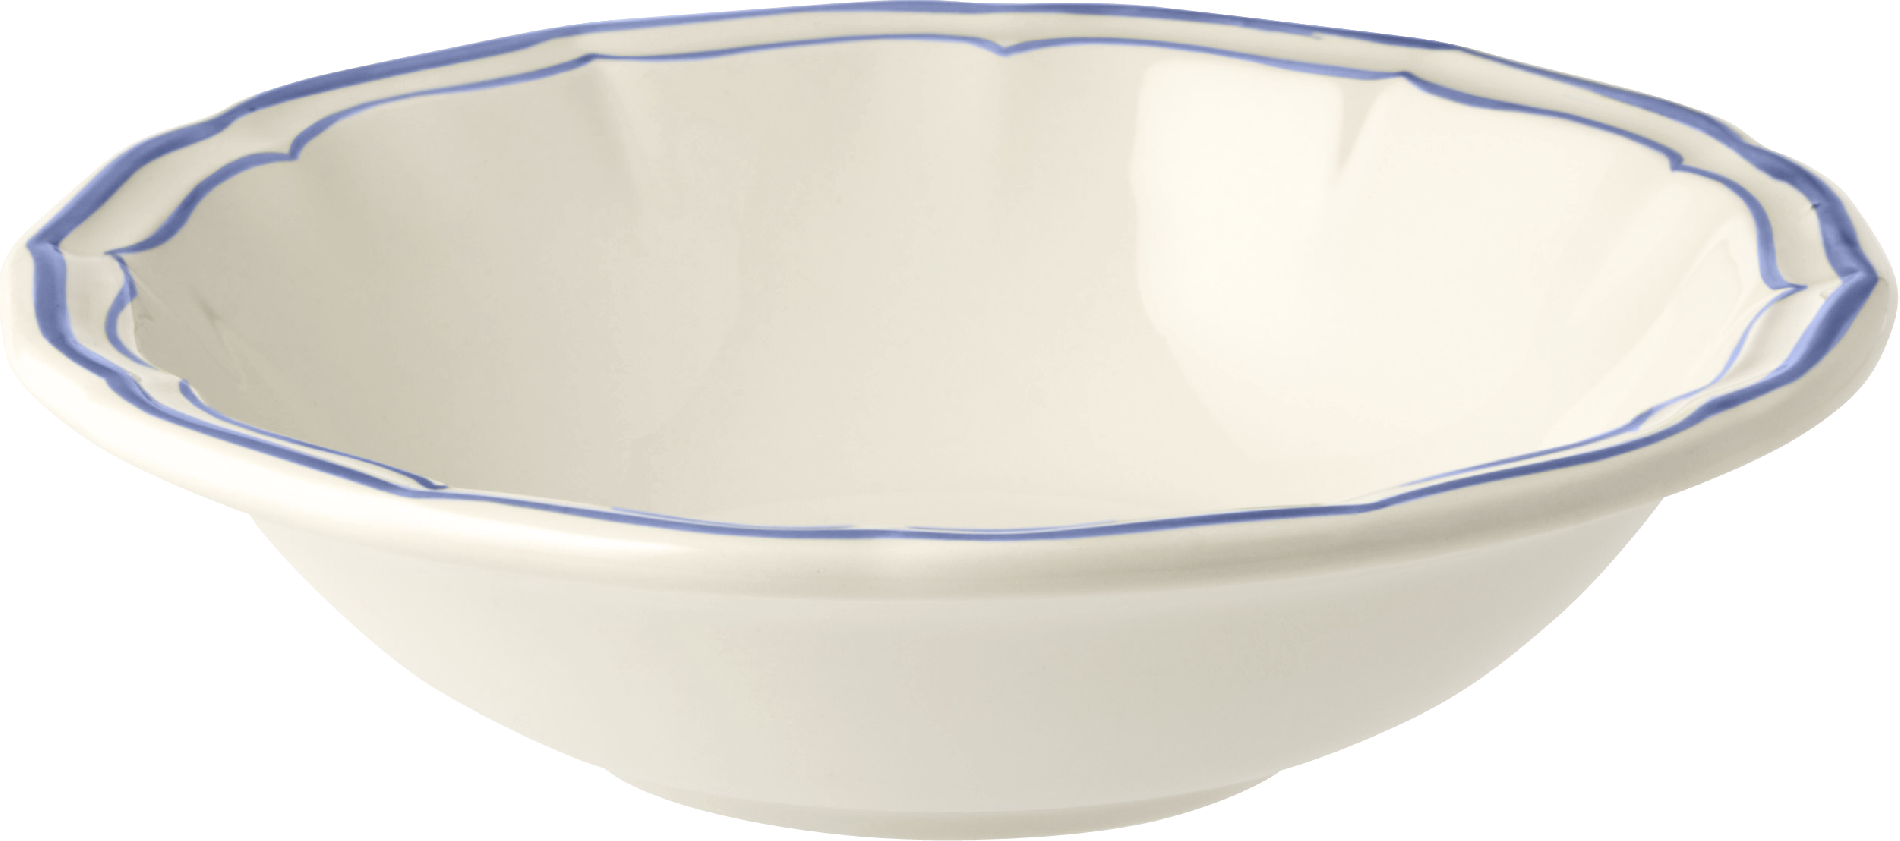 Filet Bleu Cereal Bowl